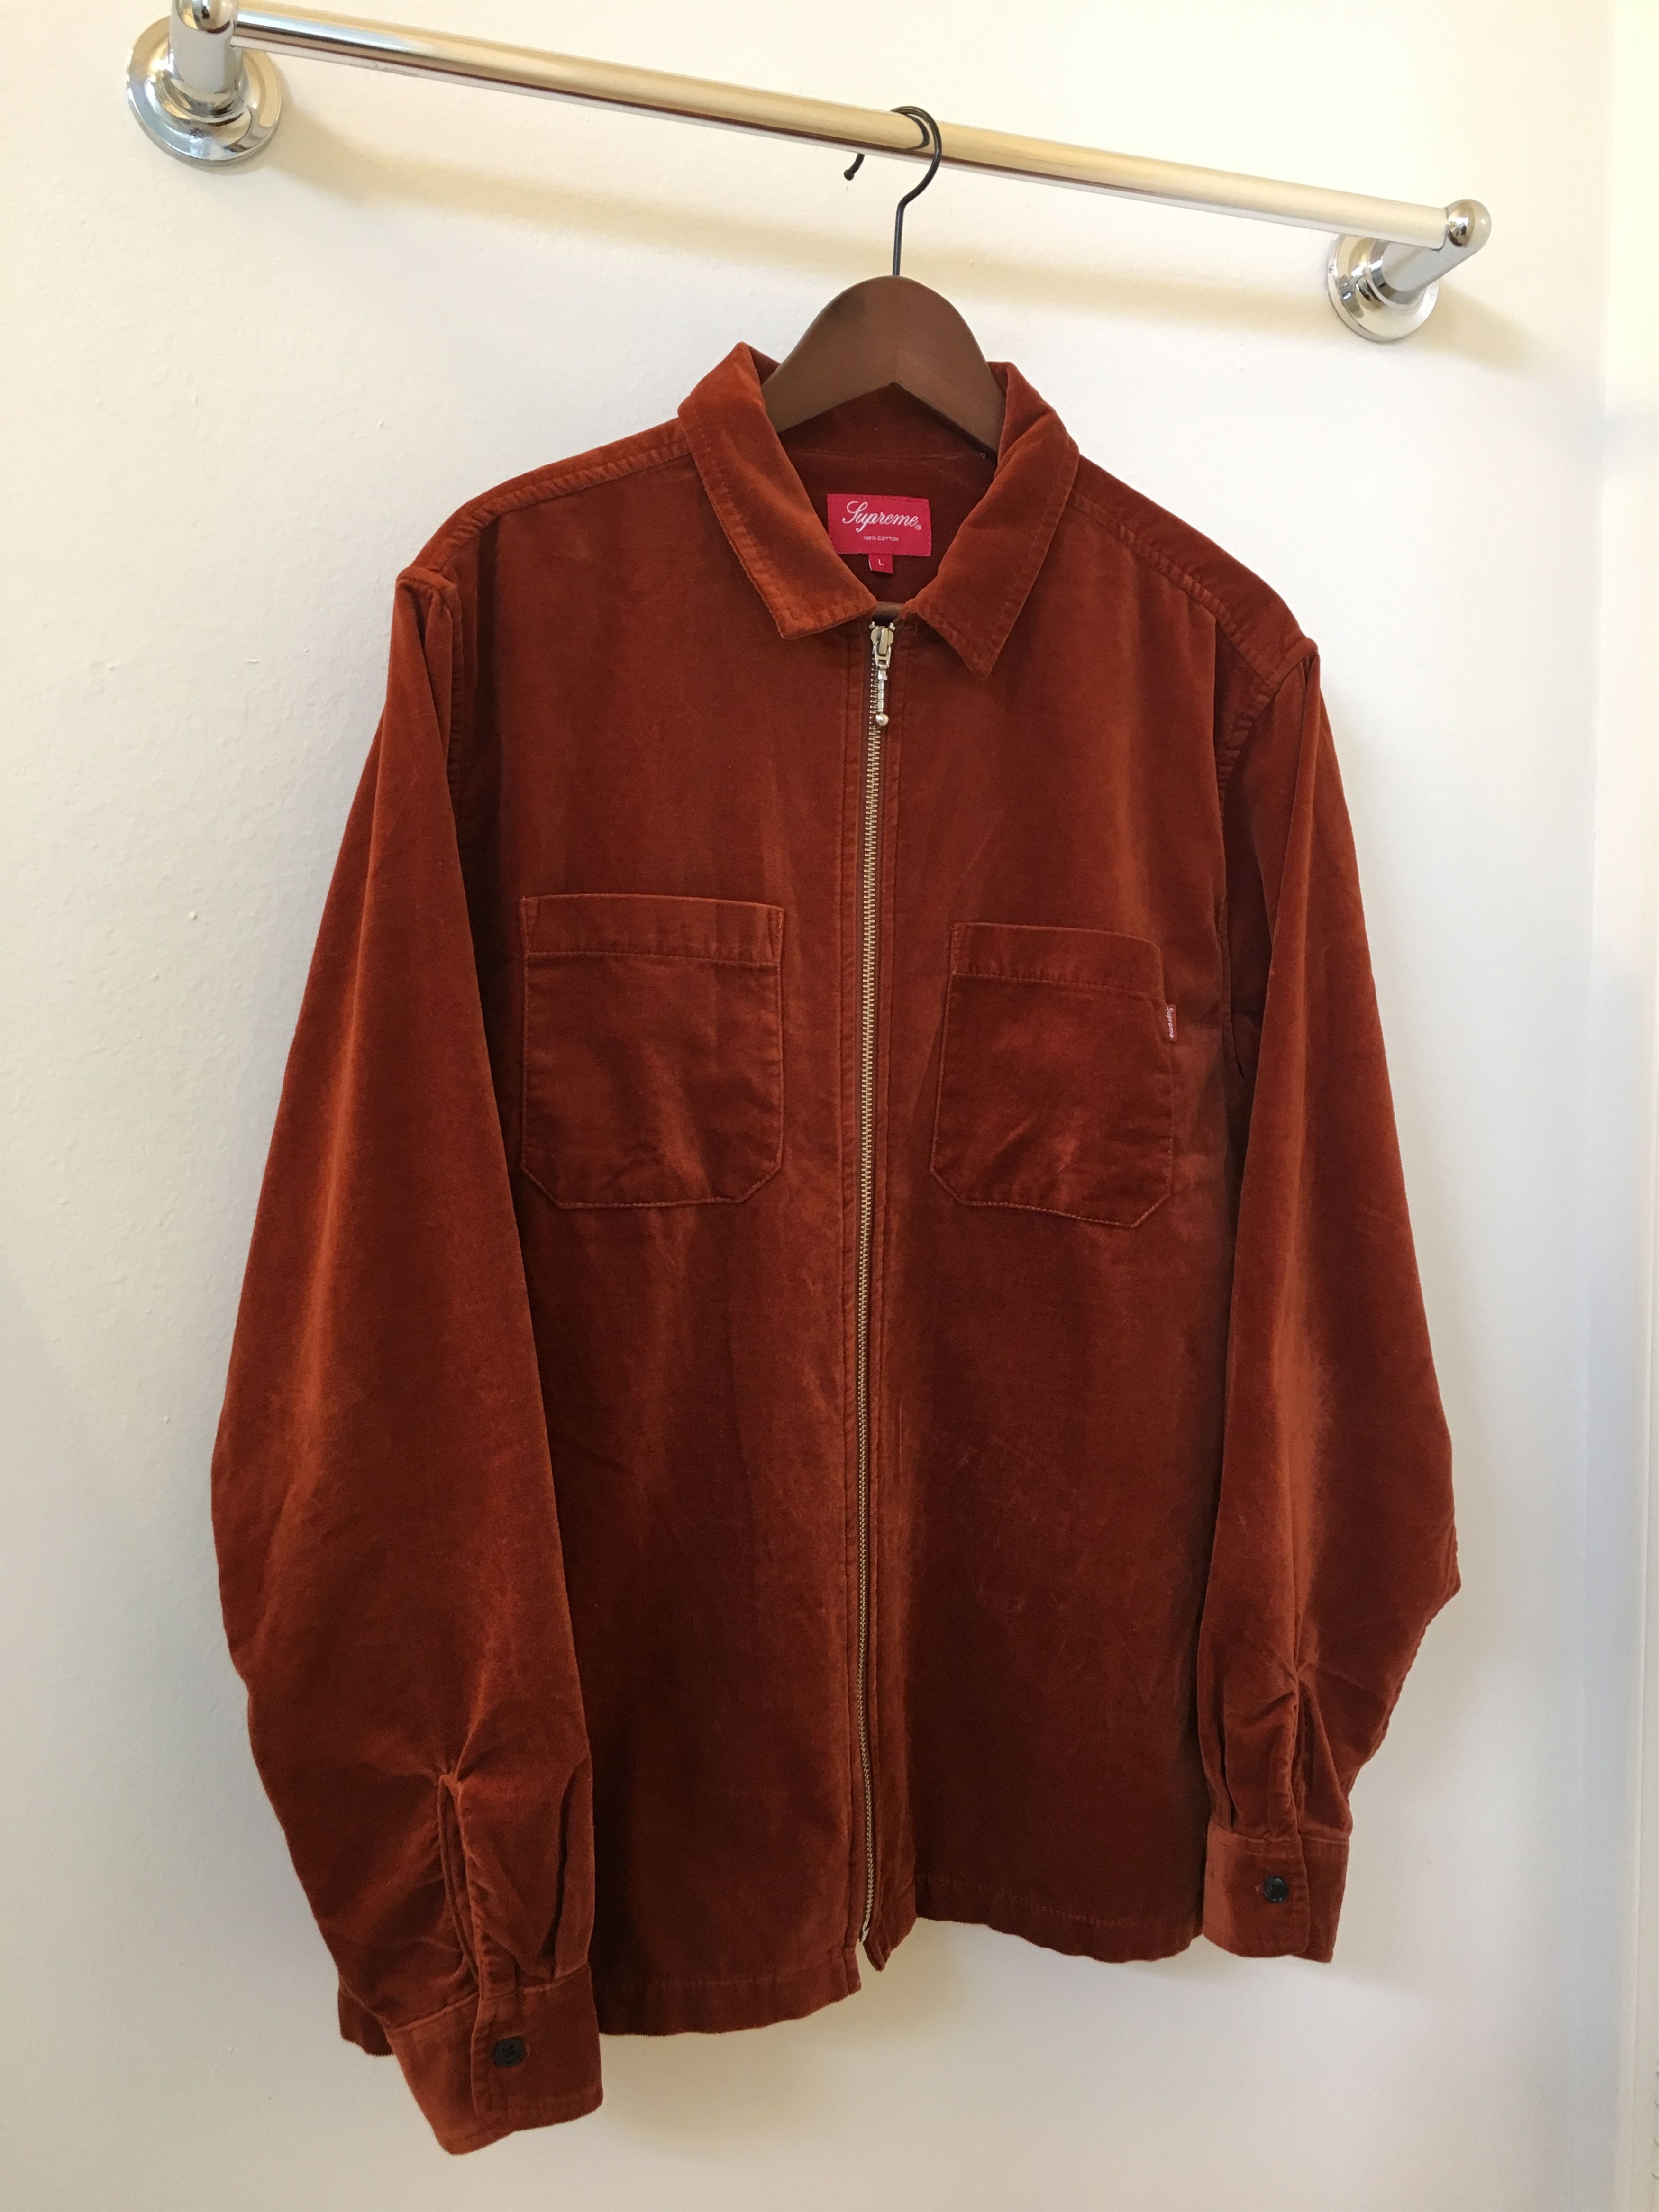 Supreme Supreme velvet zip up shirt rust | Grailed